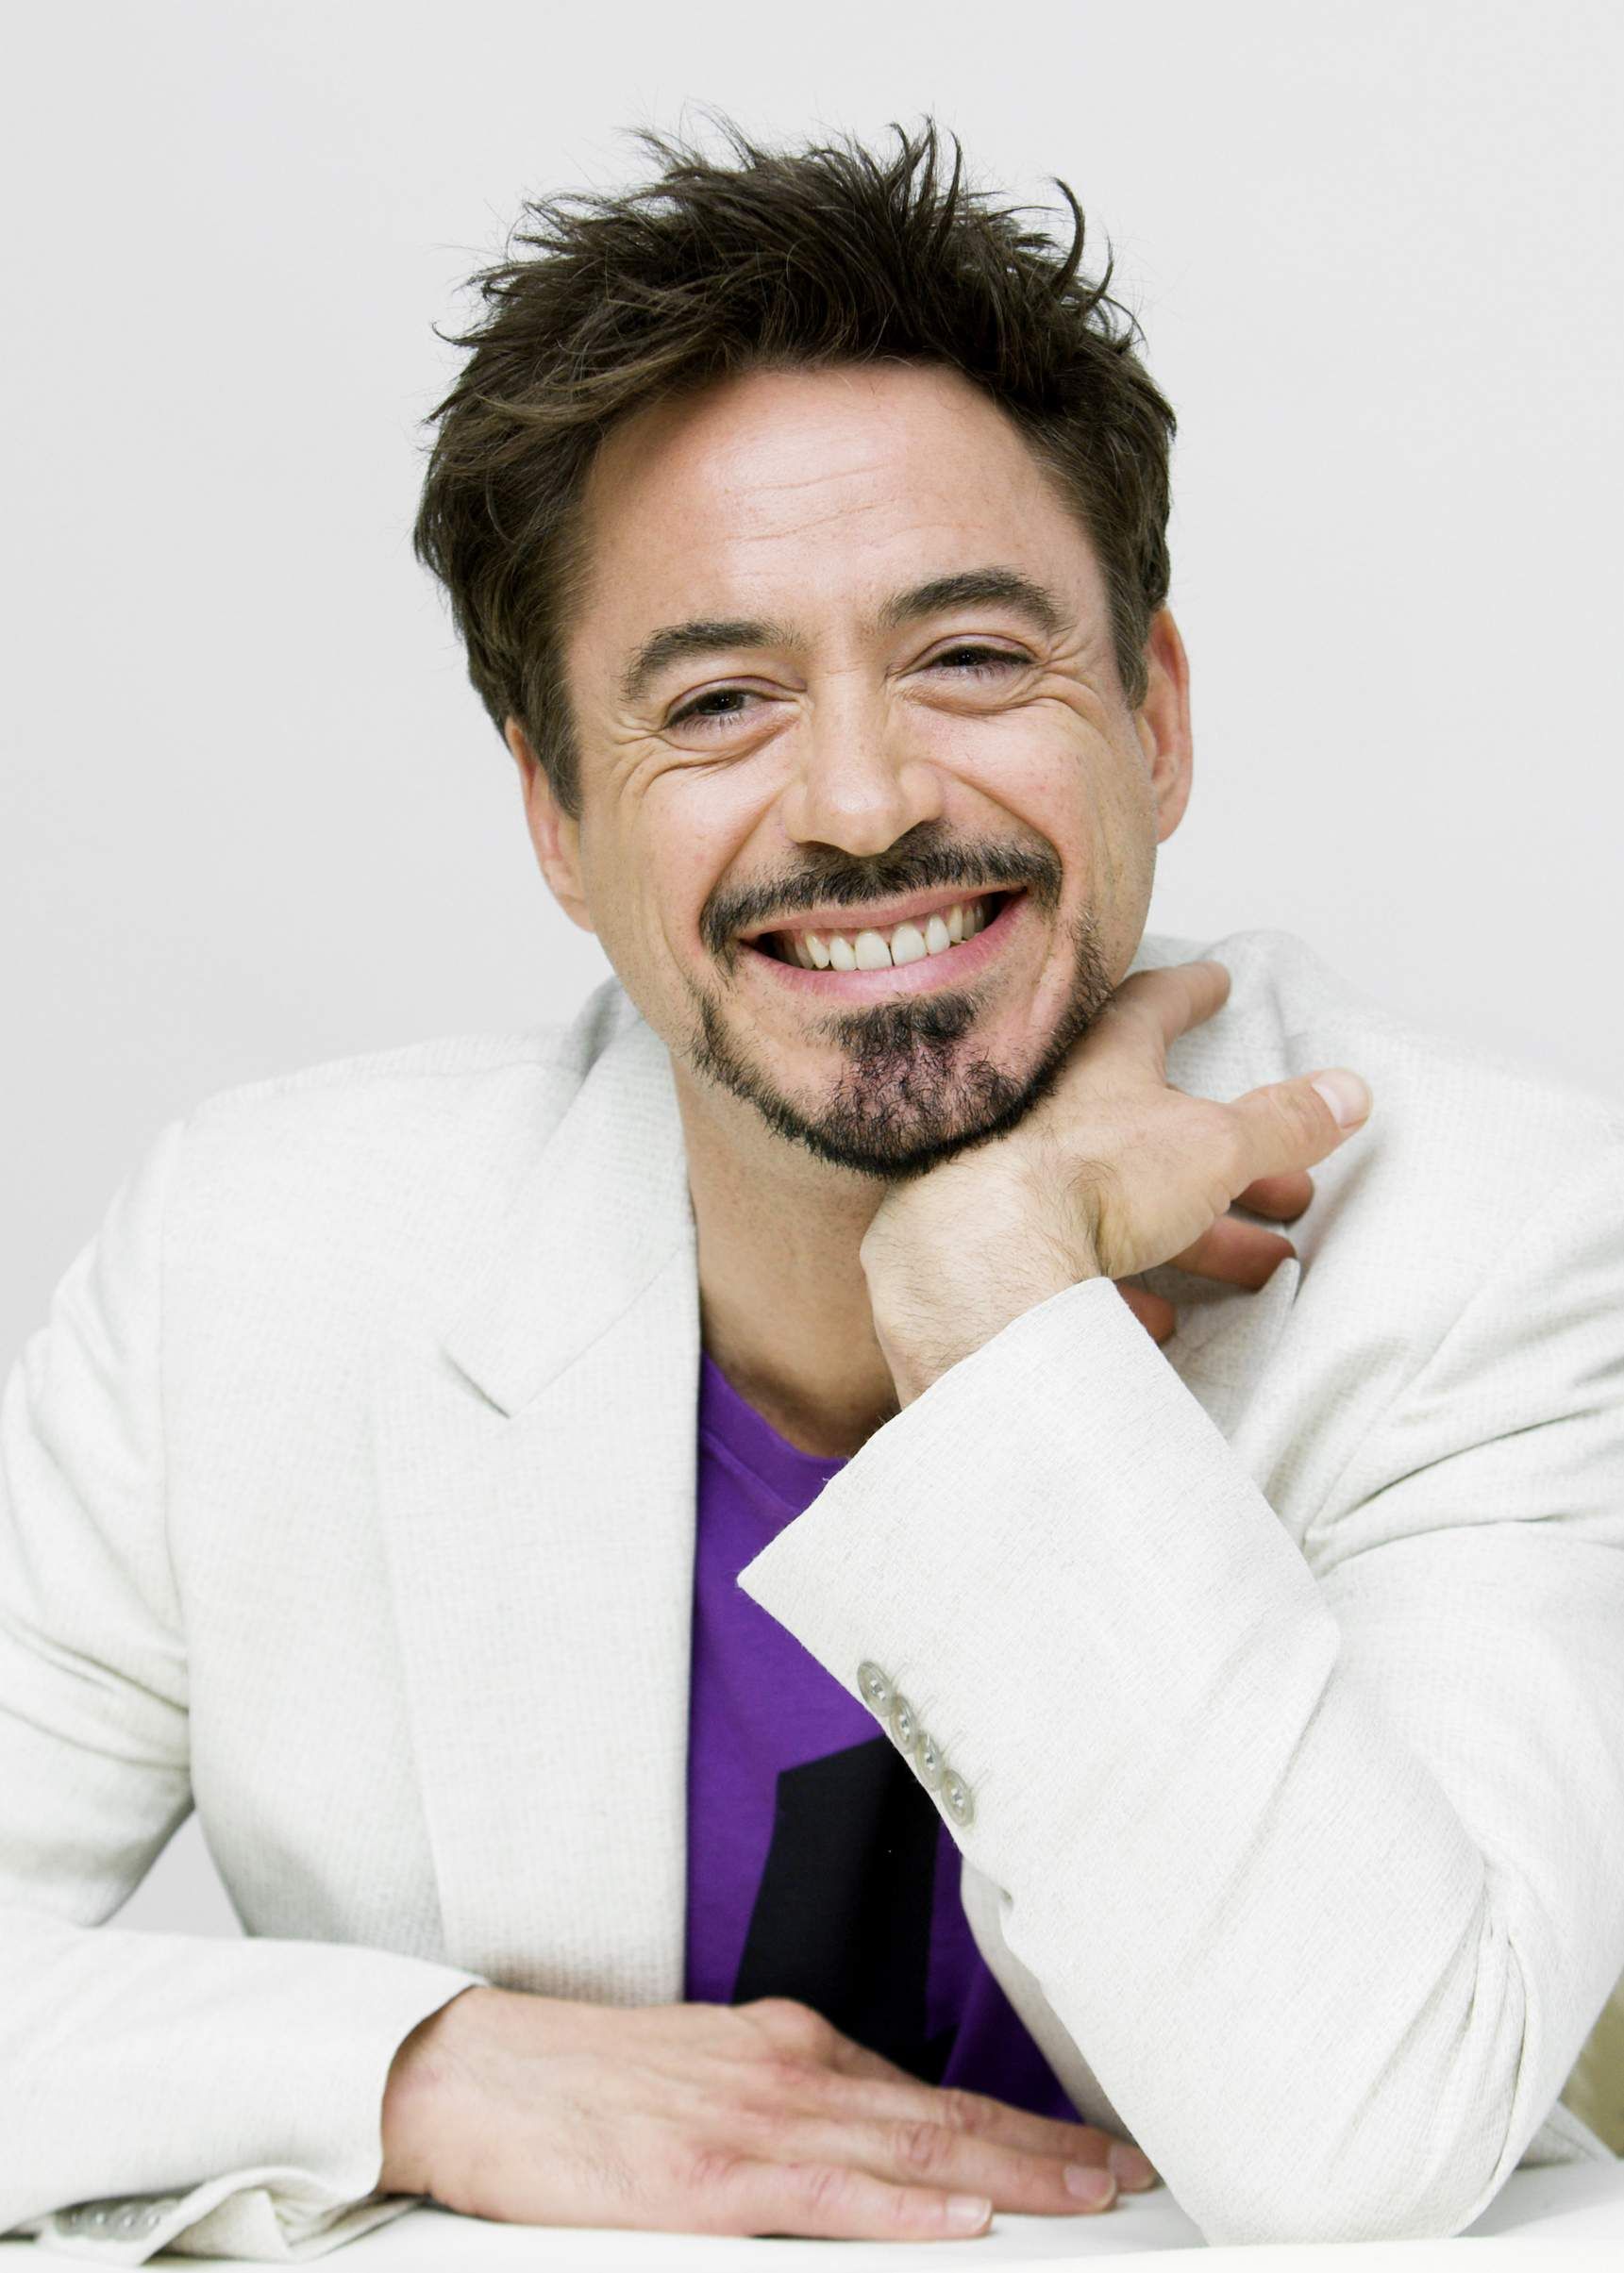 Robert Downey Jr Photo Pics Wallpaper